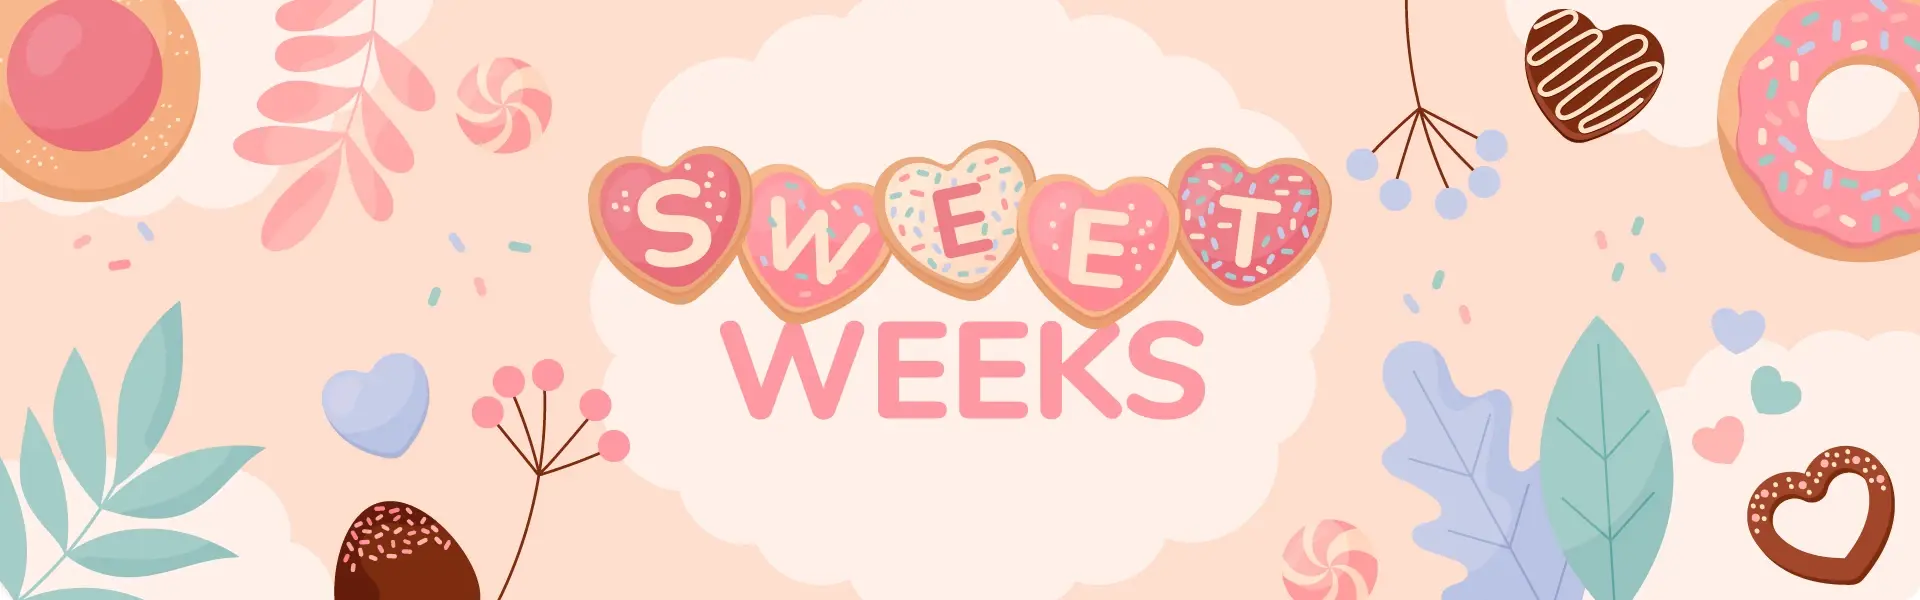 Umgeben von Donuts, Bonbons und bunten Blättern steht mittig auf Herz-Plätzchen geschrieben: "Sweet weeks"